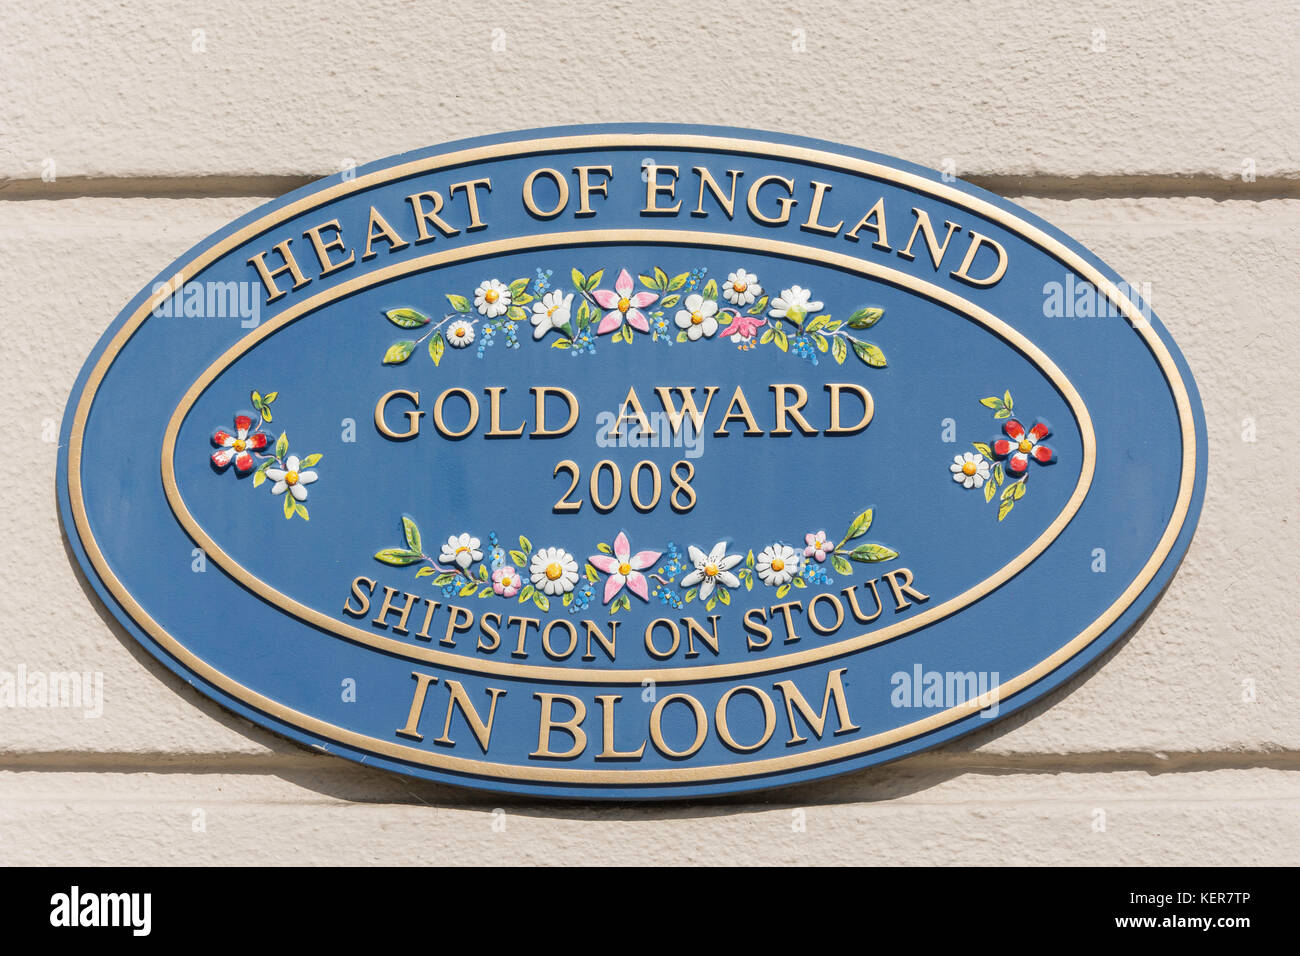 Shipston-on-Stour Gold Award plaque, High Street, Shipston-on-Stour, Warwickshire, England, United Kingdom Stock Photo